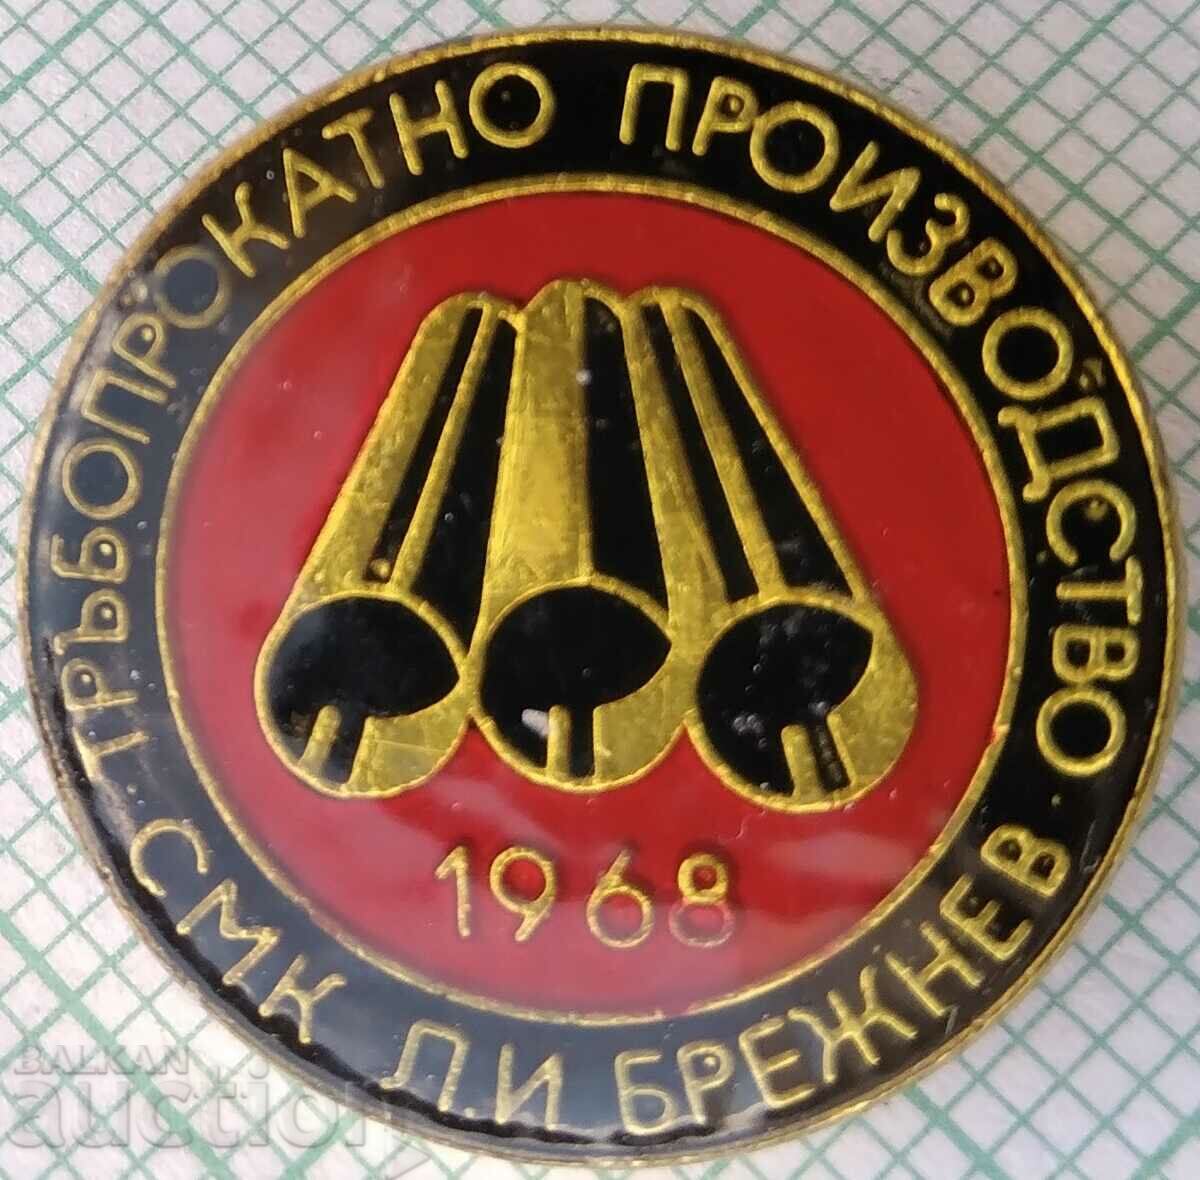 15664 Fabrica de producție de laminare a țevilor Kremikovtsi 1968